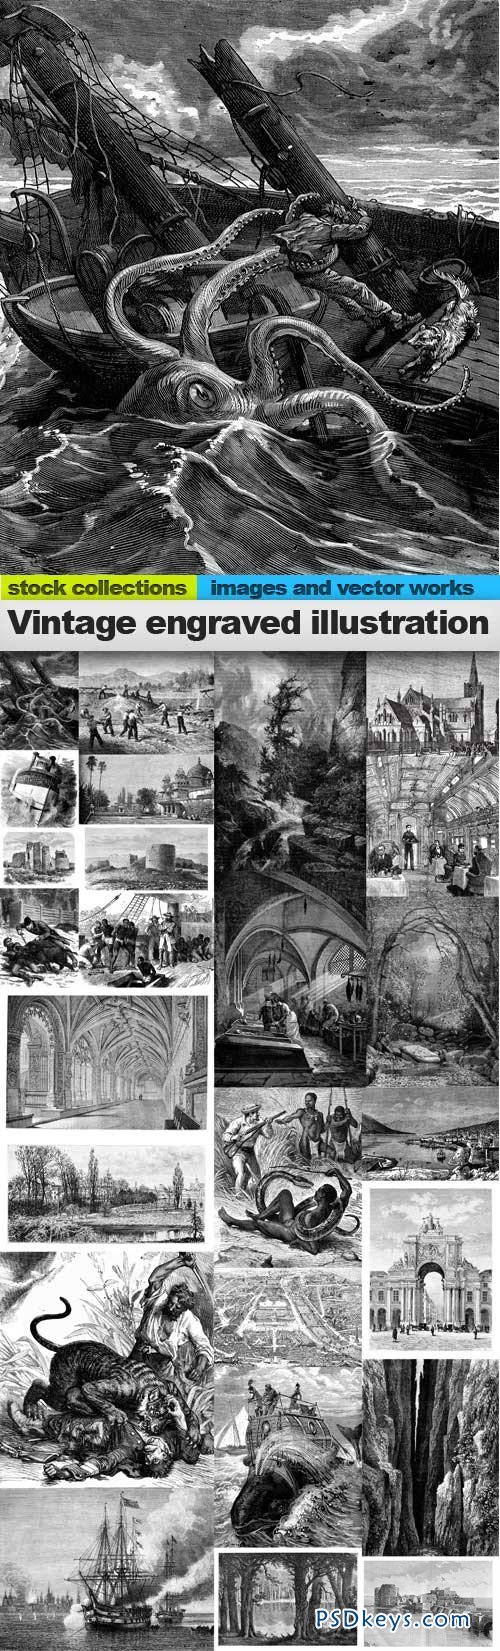 Vintage engraved illustration images 25xUHQ JPEG